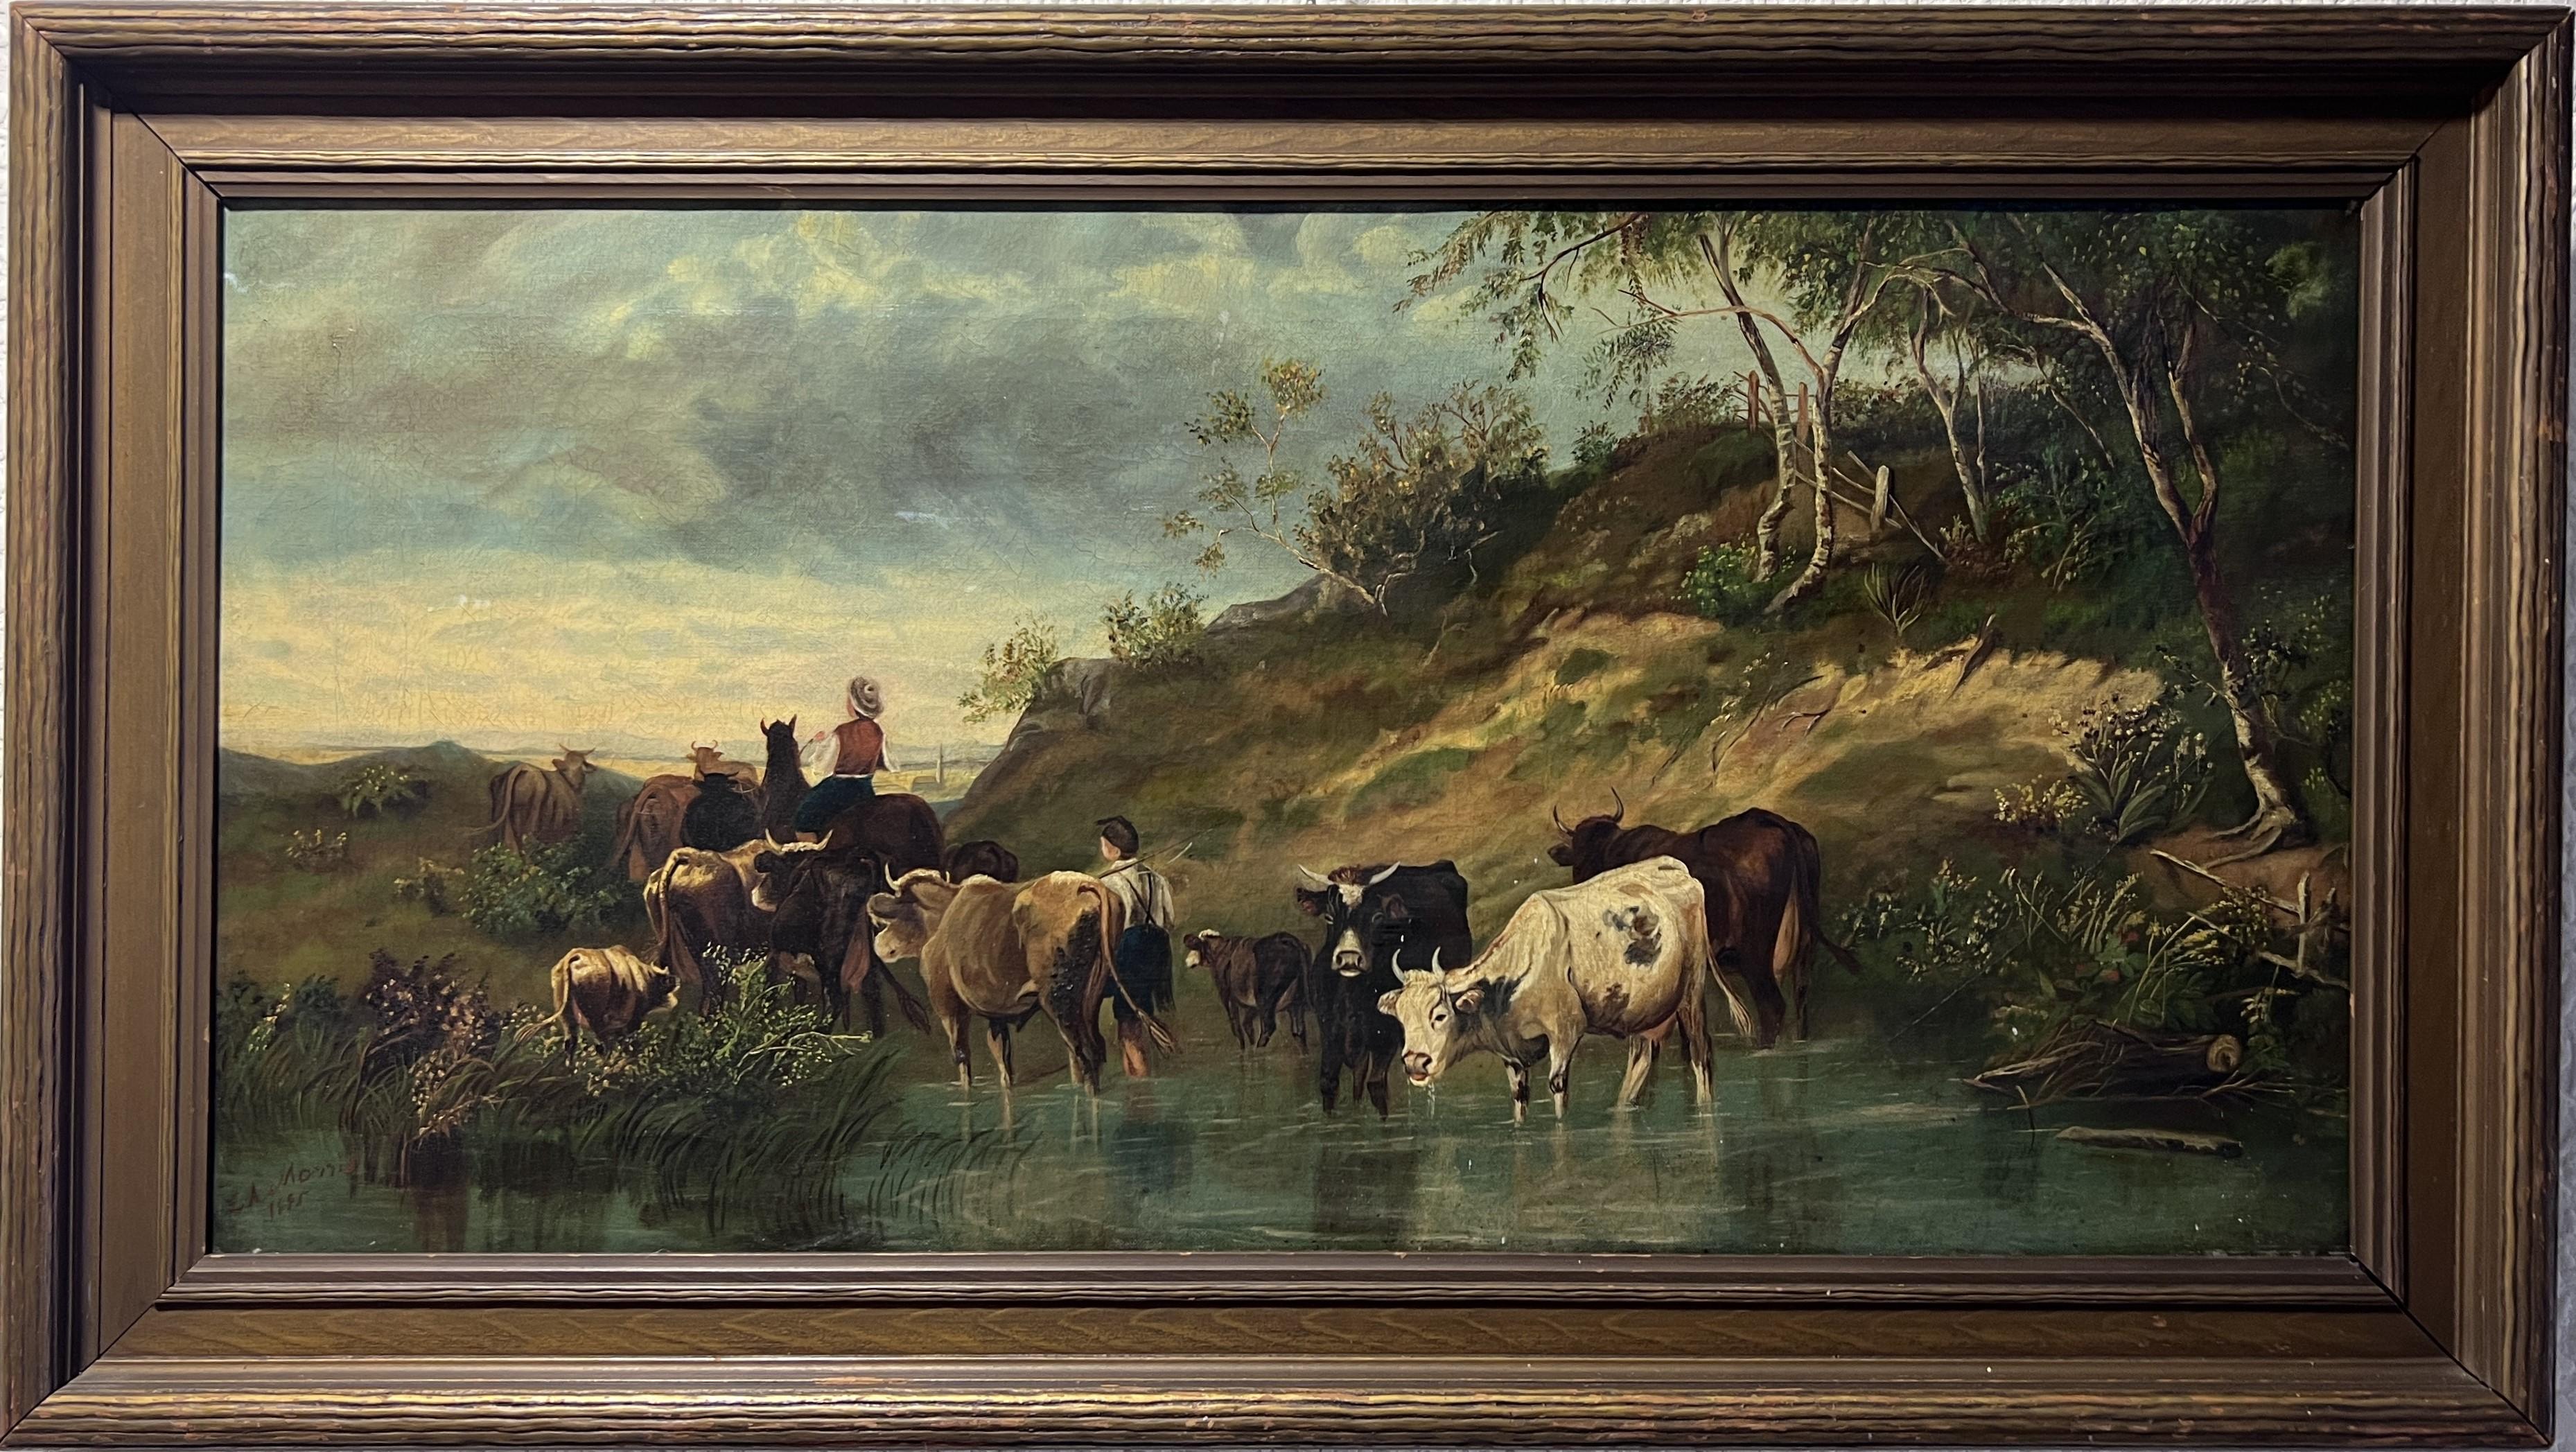 Il s'agit d'une grande peinture à l'huile originale du XIXe siècle sur toile représentant un paysage agricole rural et une scène de genre - deux bergers conduisent un troupeau de vaches à un point d'eau.
Il est magnifique dans un cadre orné